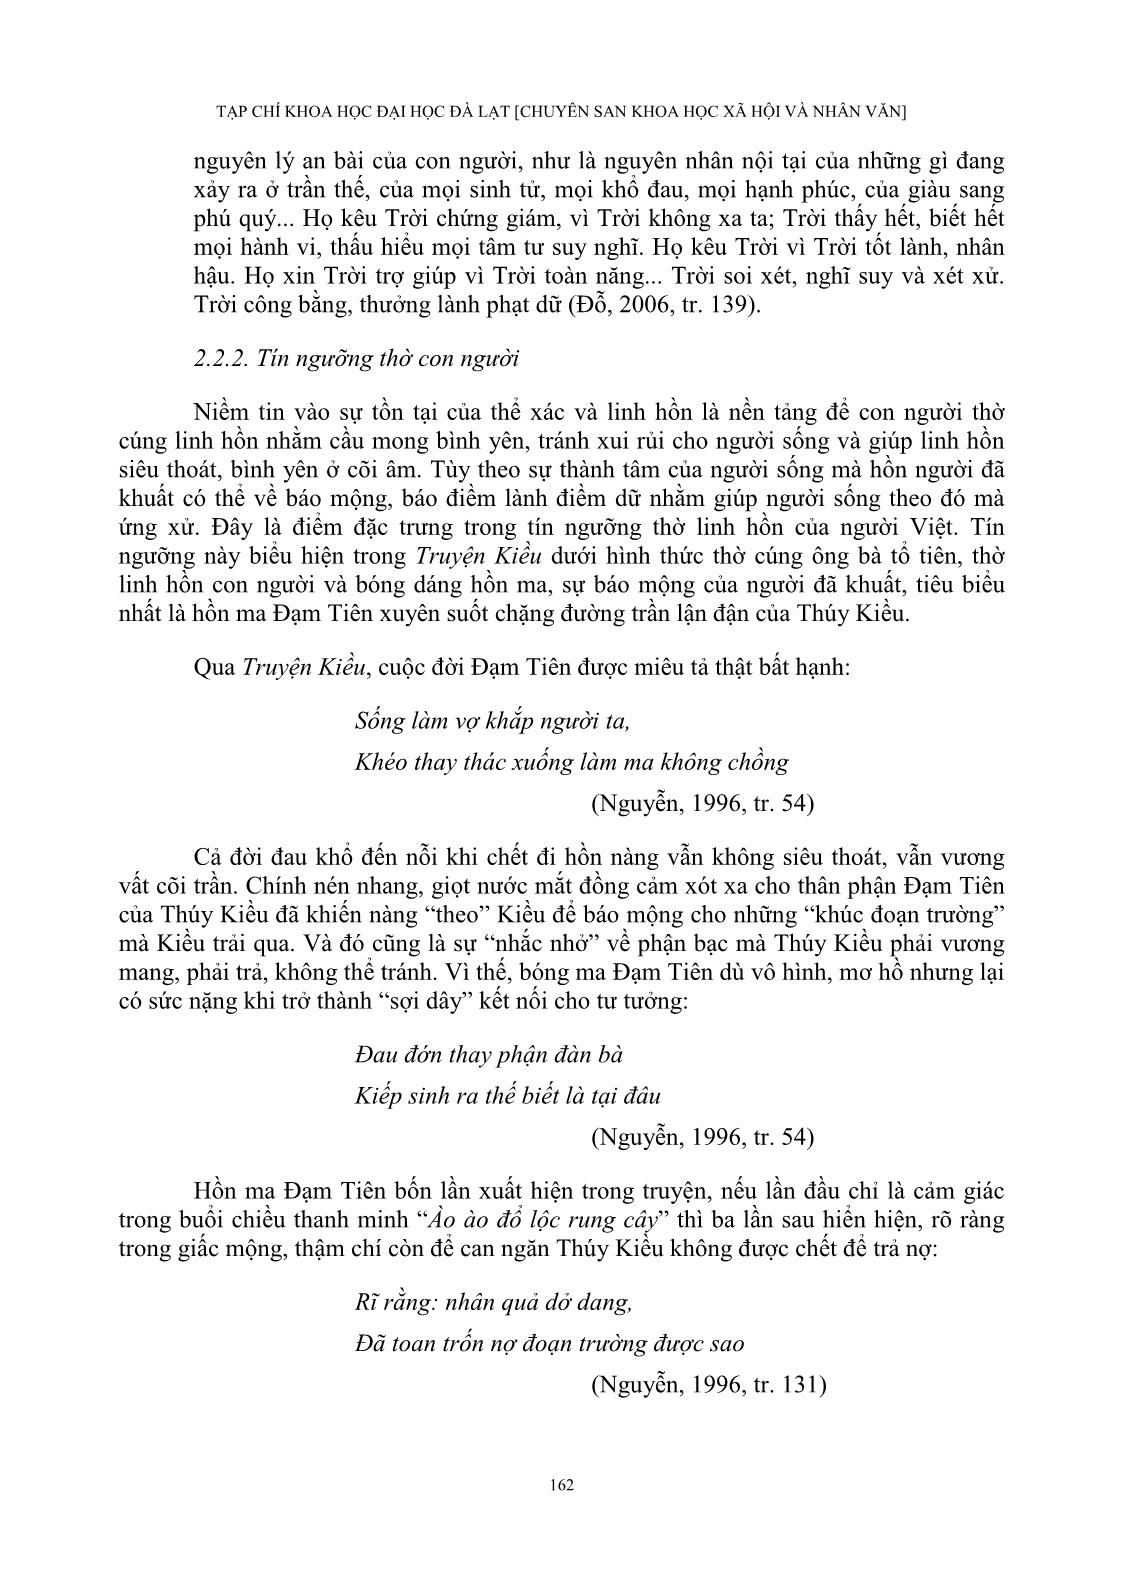 Tín ngưỡng dân gian trong truyện kiều và văn tế thập loại chúng sinh (văn chiêu hồn) của Nguyễn Du trang 8